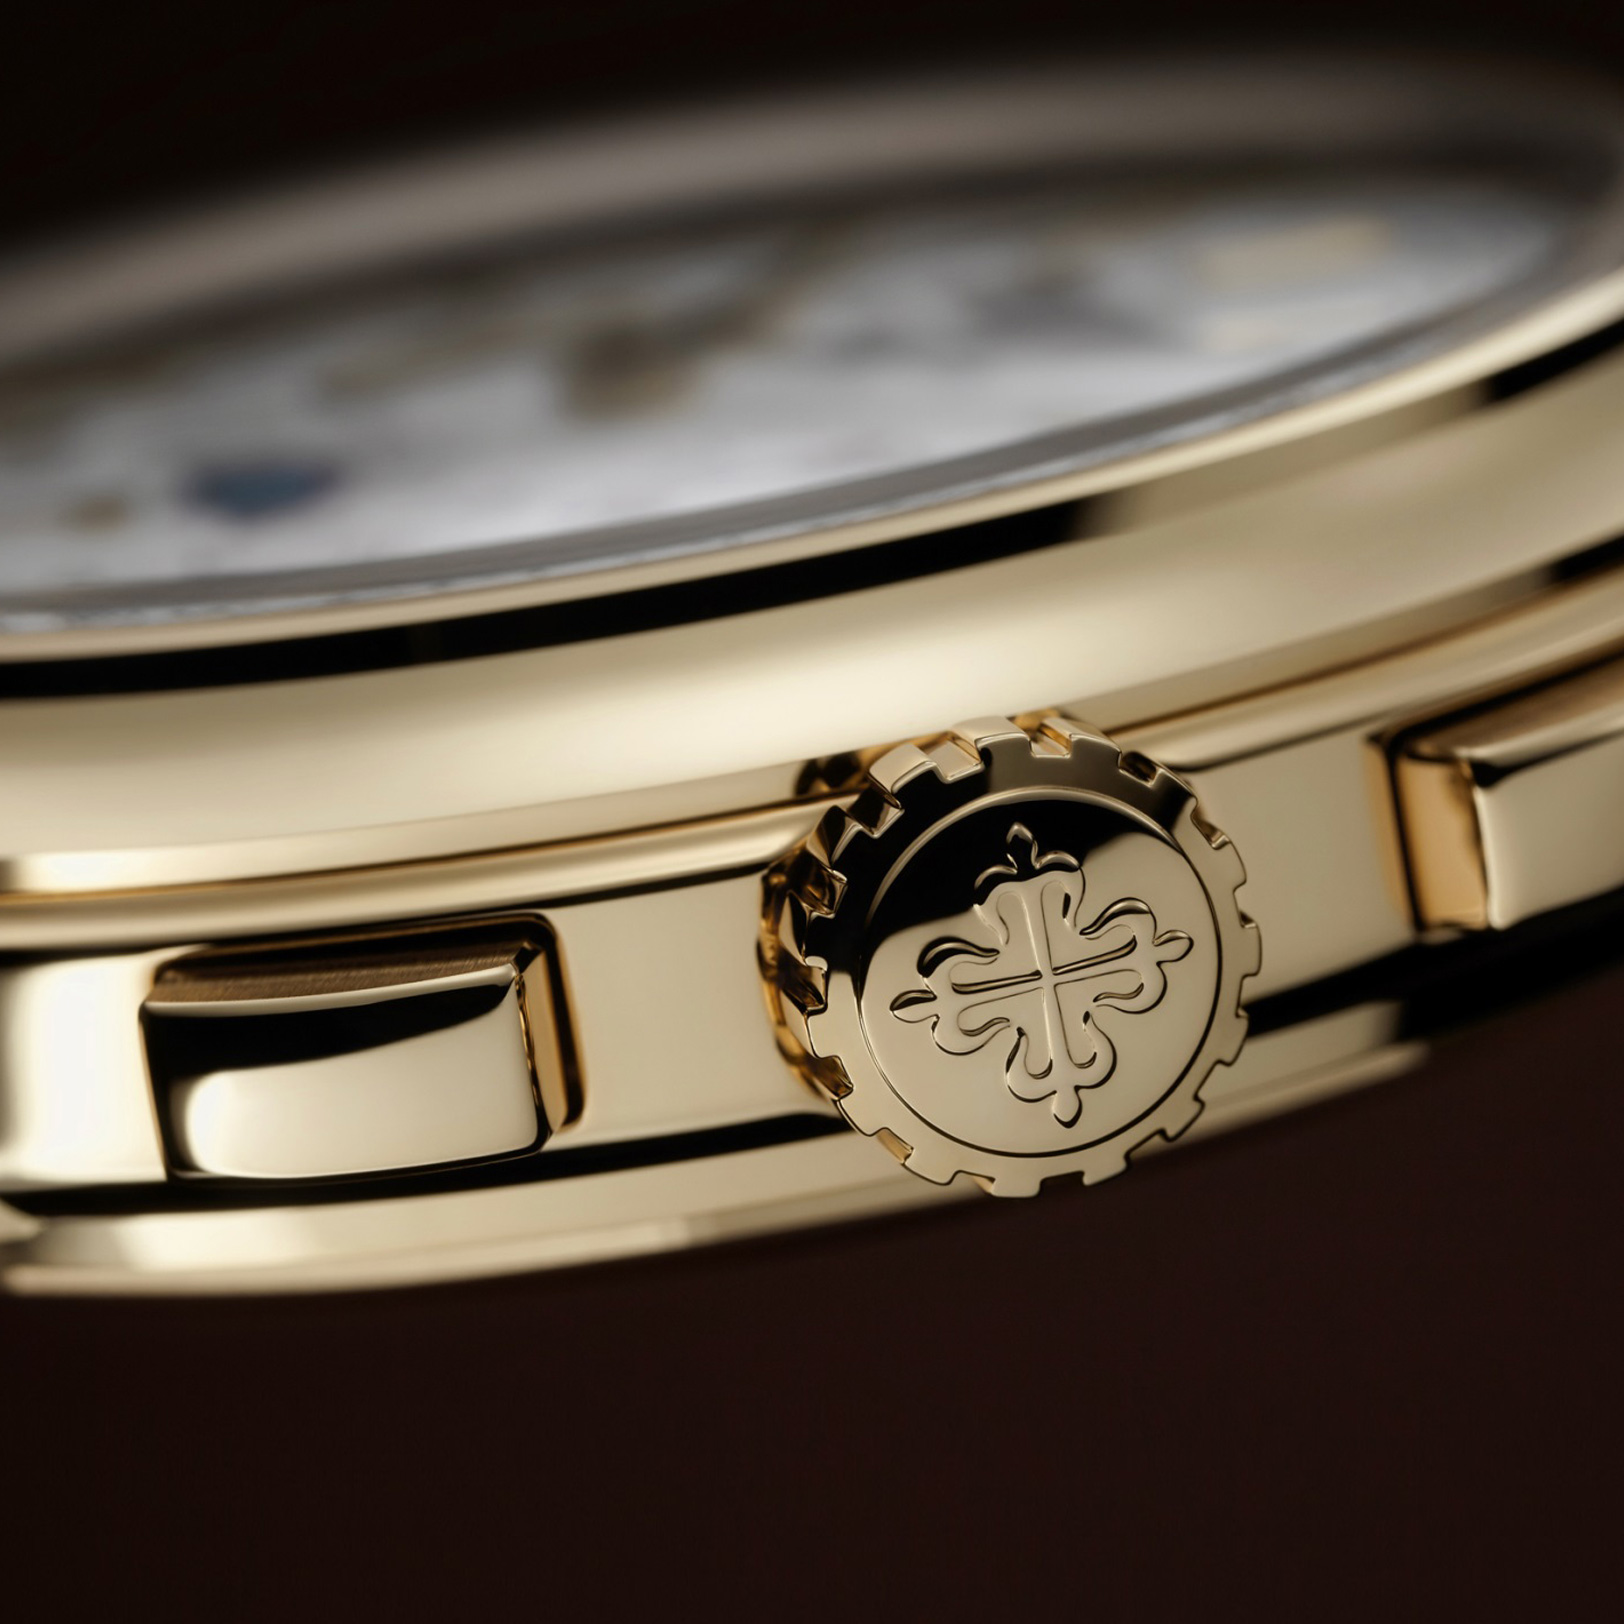 นาฬิกาปาเต็ก ฟิลิปป์ GRAND COMPLICATIONS PERPETUAL CALENDAR CHRONOGRAPH YELLOW GOLD gallery 10